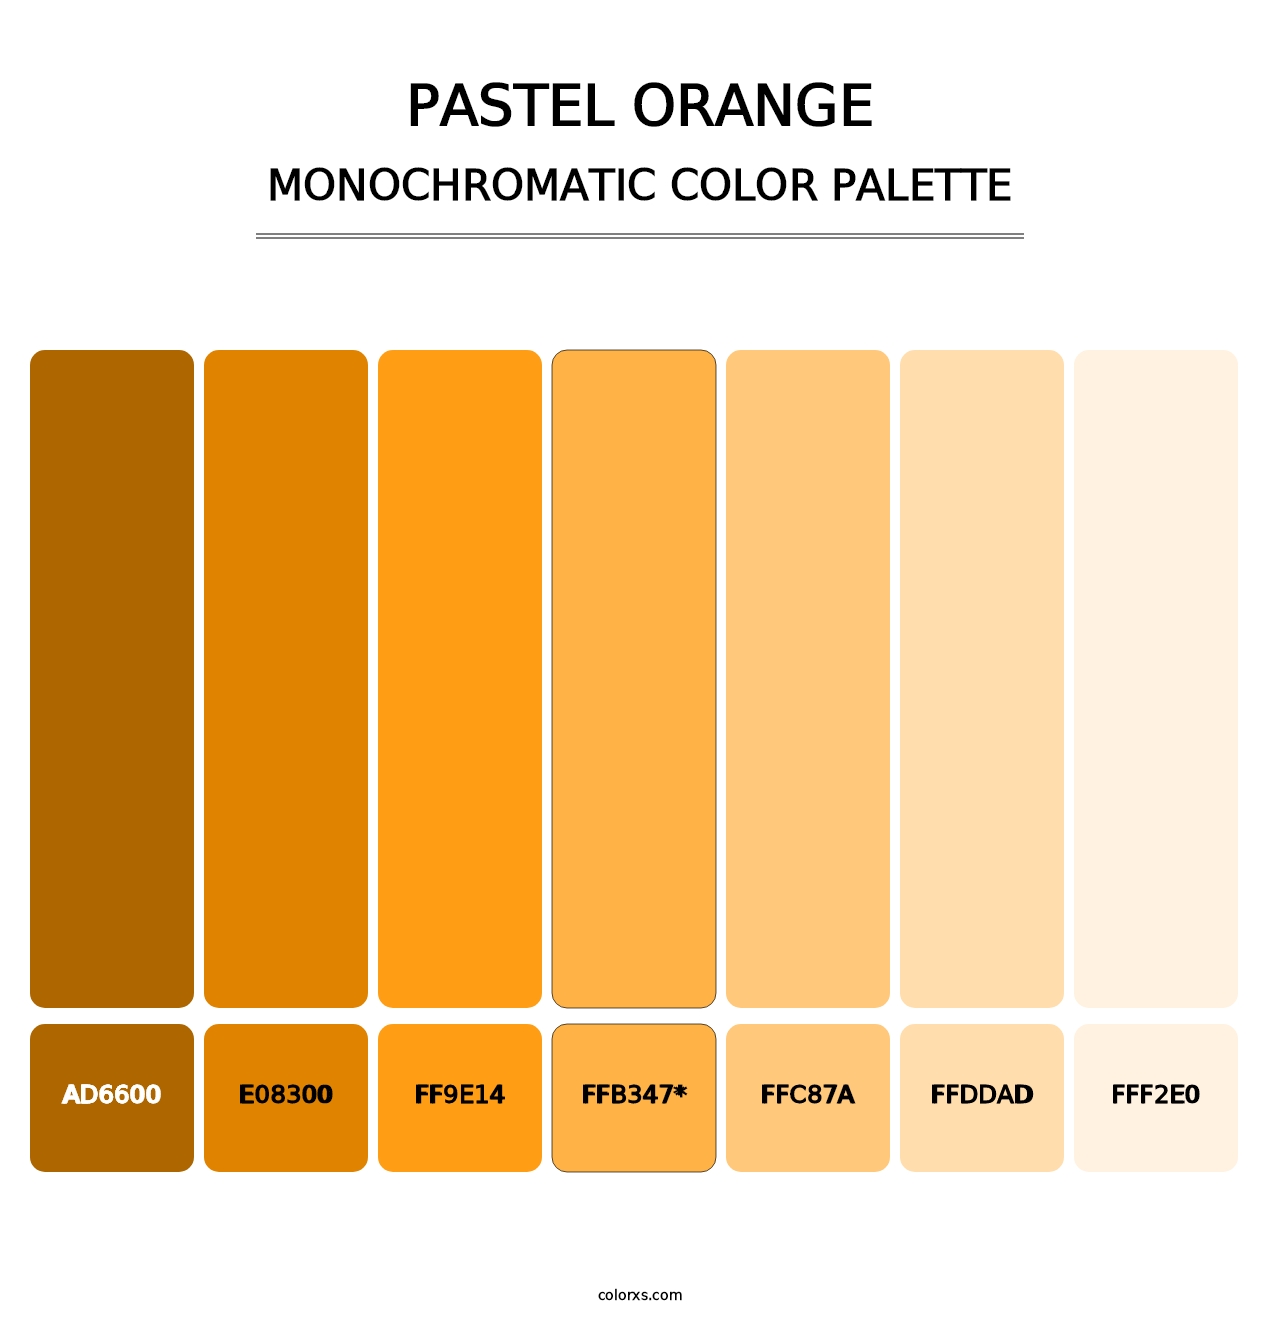 Pastel Orange - Monochromatic Color Palette